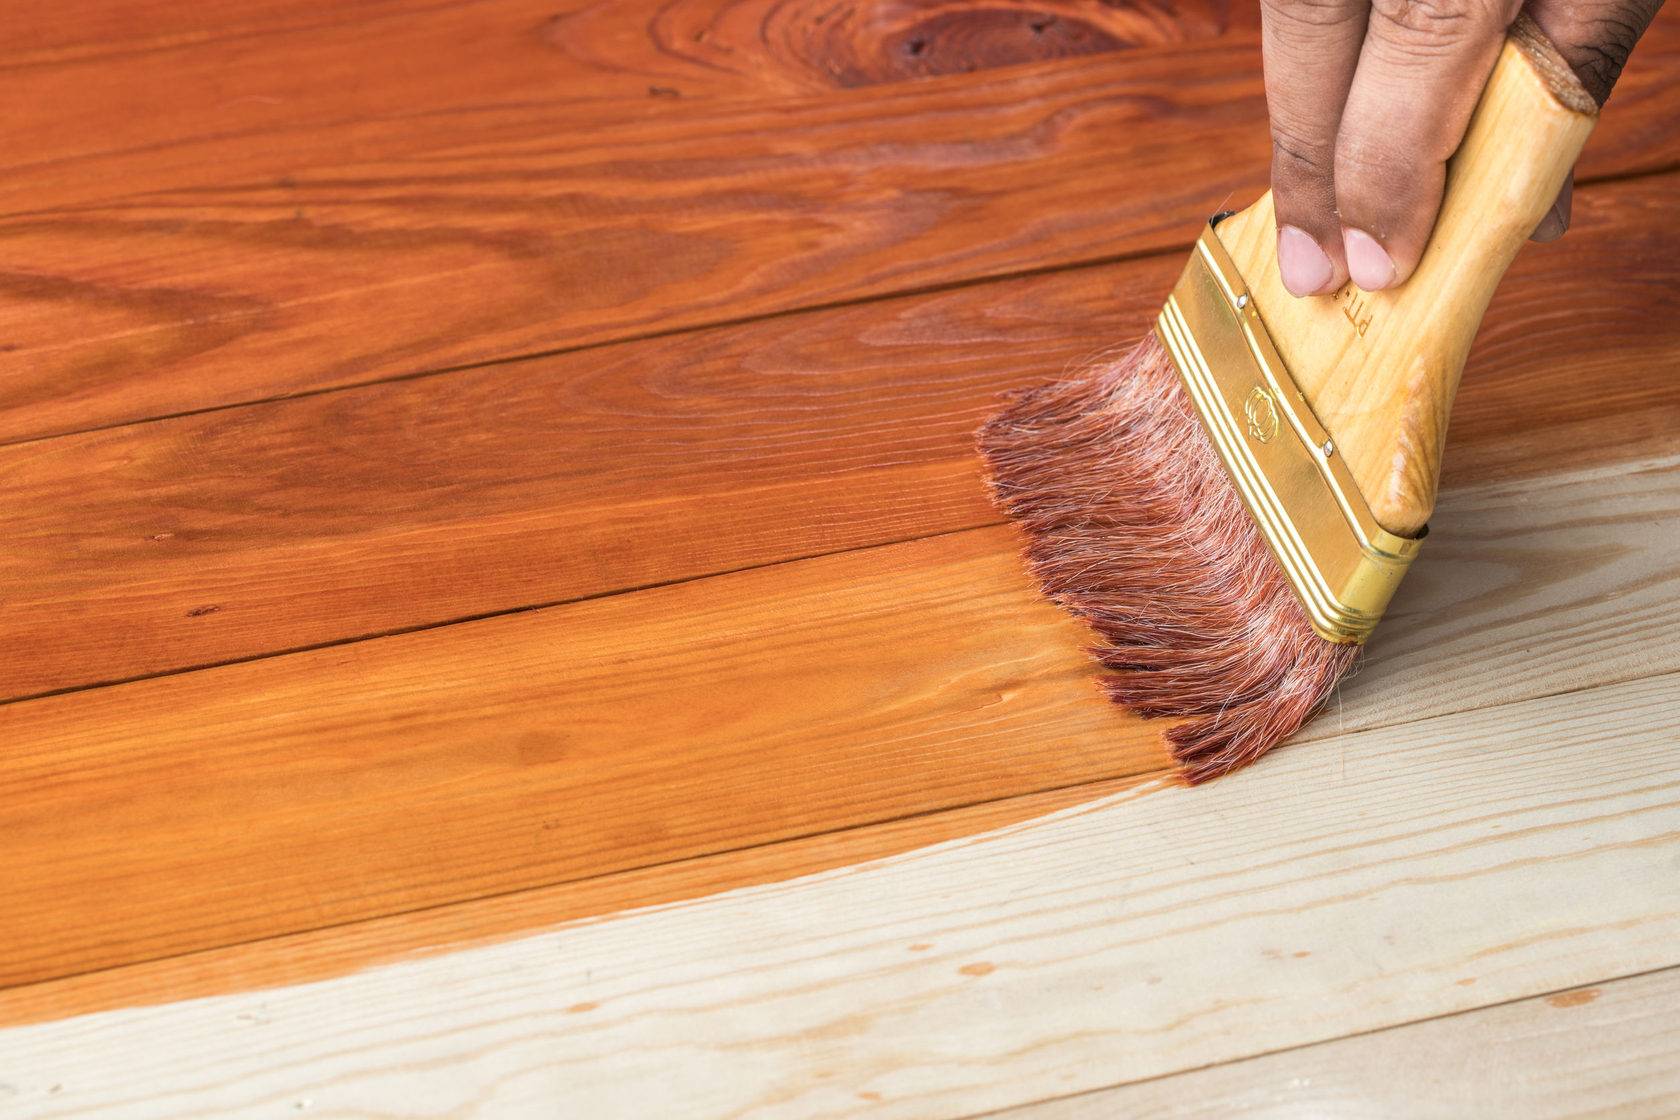 Подготовка деревянных поверхностей к оштукатуриванию и окрашиванию: какие материалы и инструменты потребуются, чем пропитать покрытие перед окраской и иной работой?